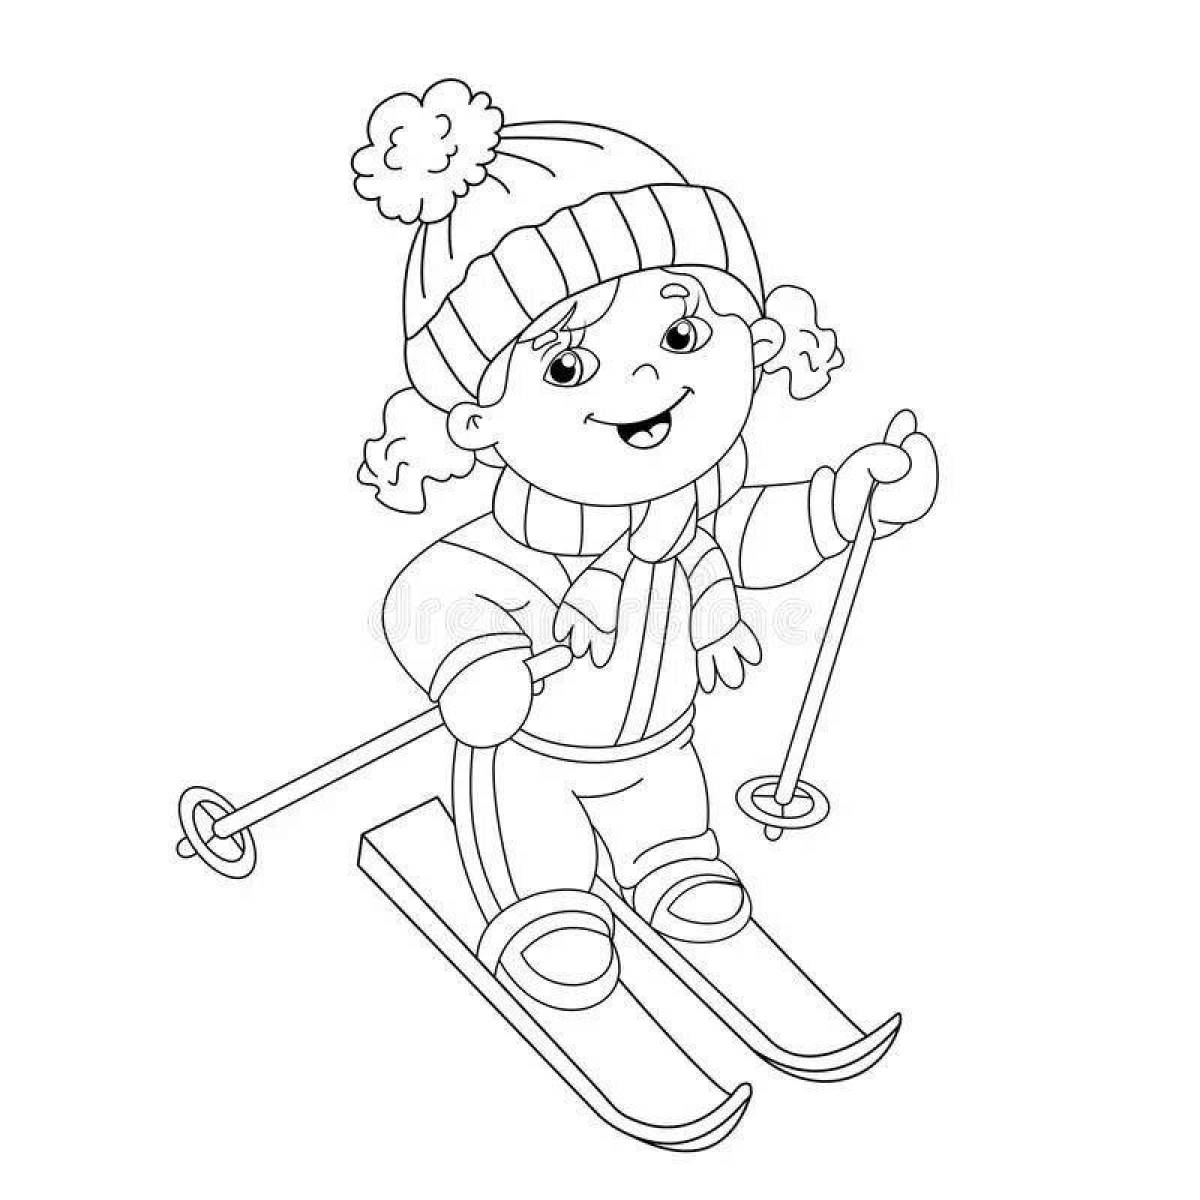 Child skiing #2